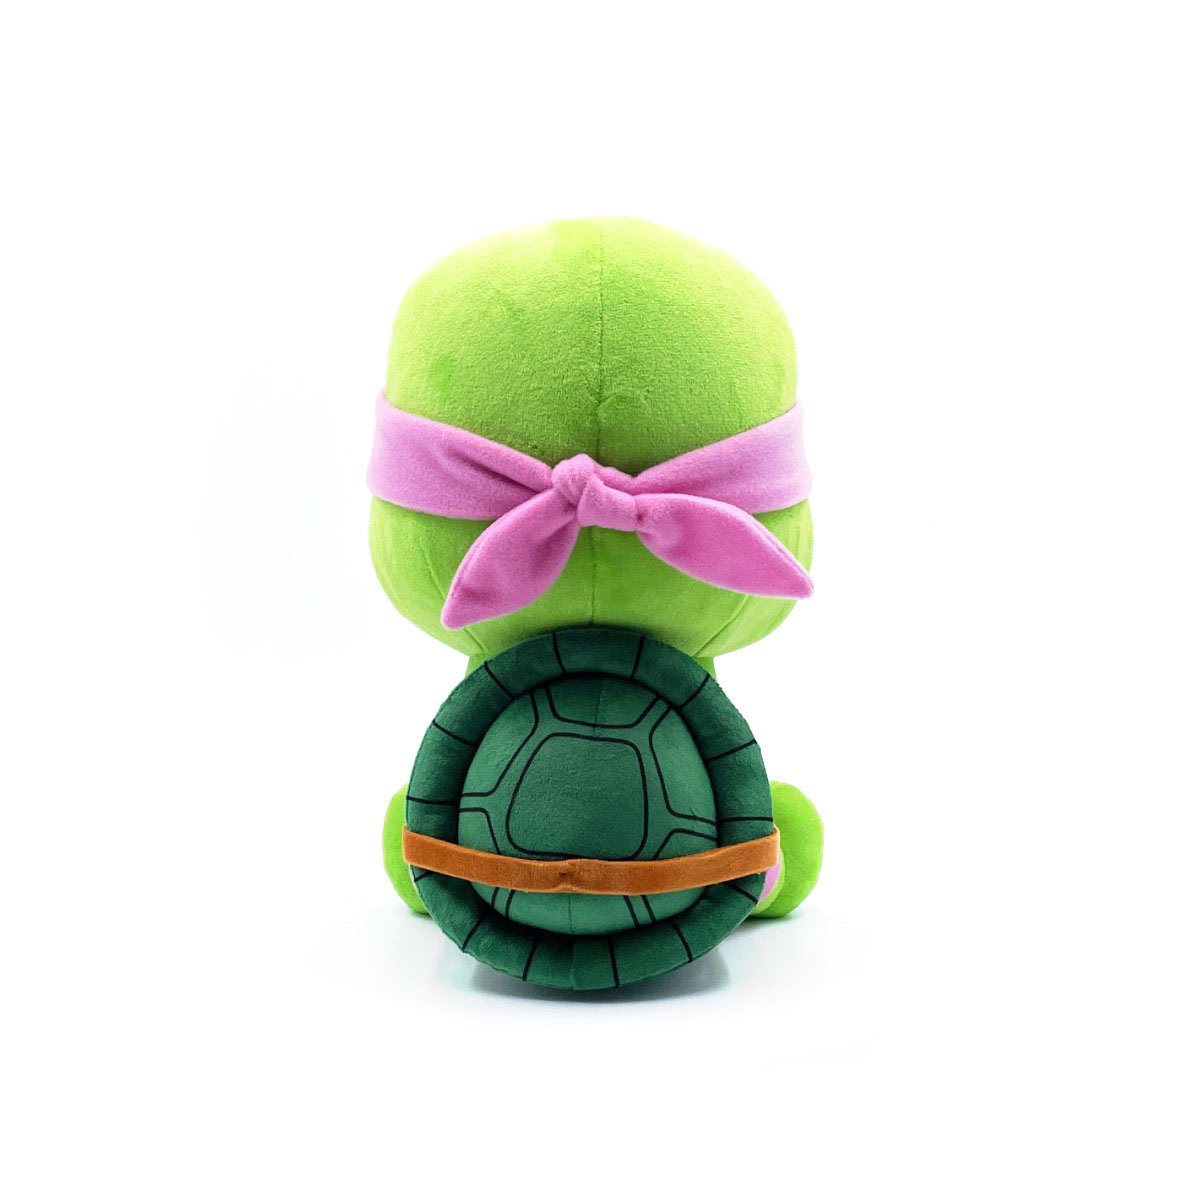 Shop Stuffed Teenage Mutant Ninja Turtles, TMNT Plush